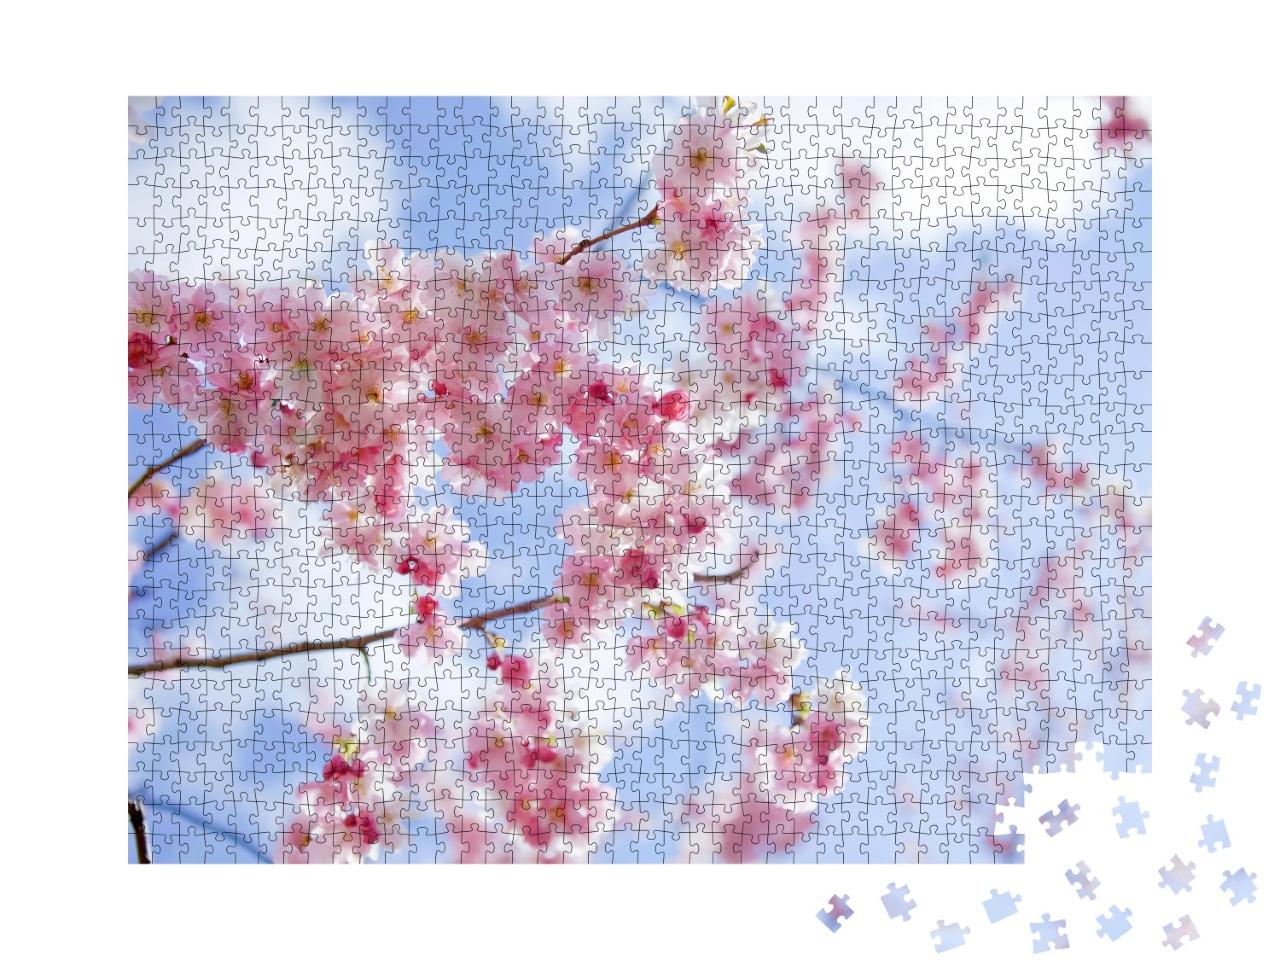 Puzzle de 1000 pièces « Sakura : des cerisiers en fleurs roses au printemps japonais »